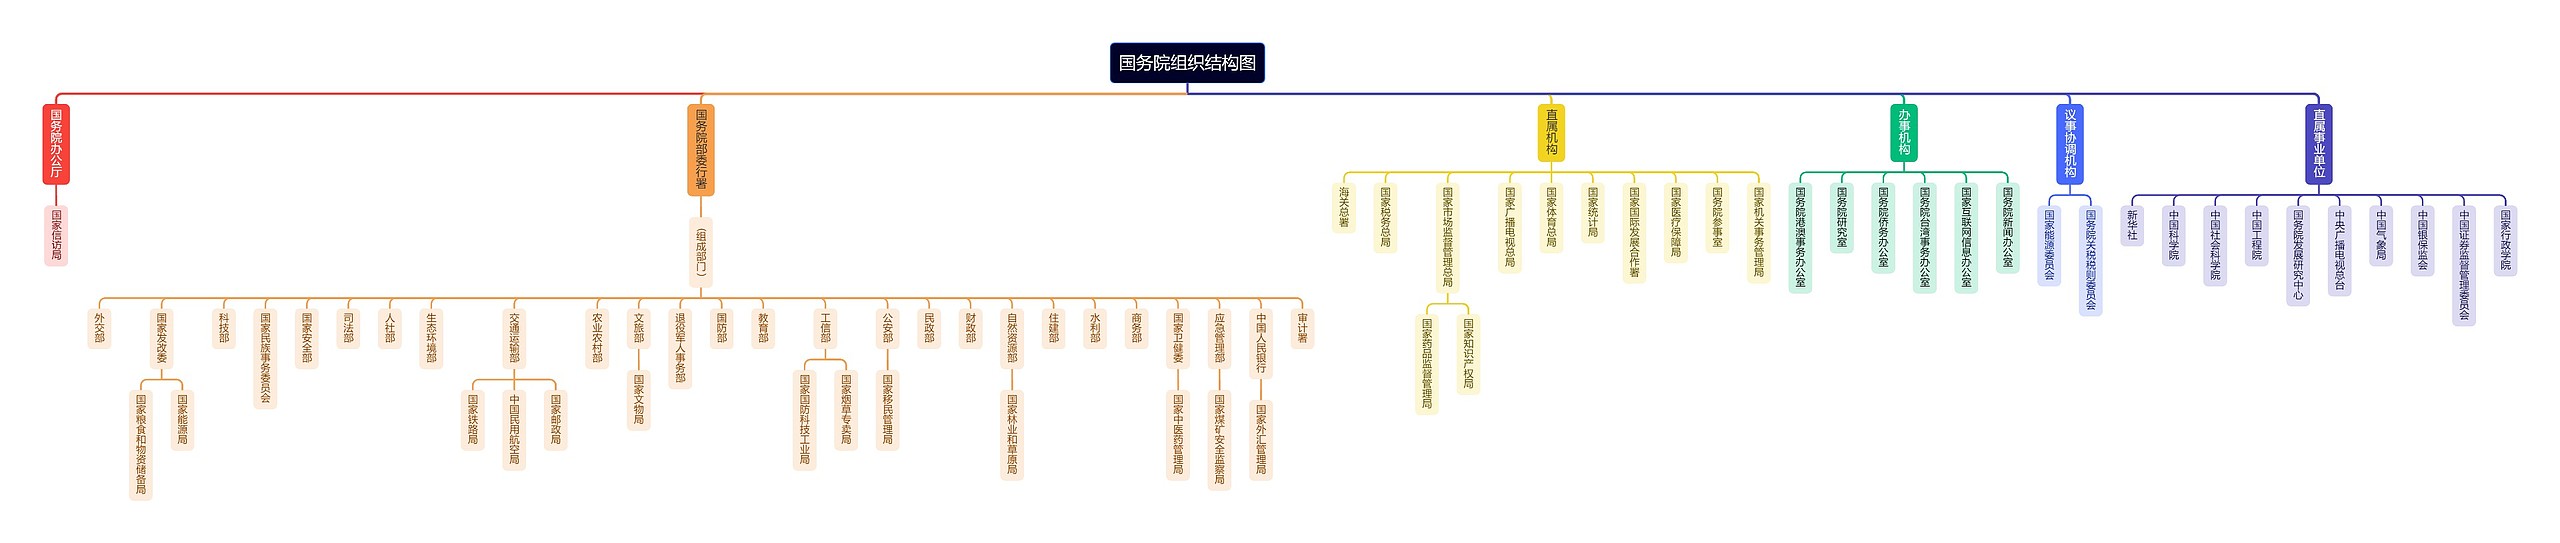 国务院组织经典结构图